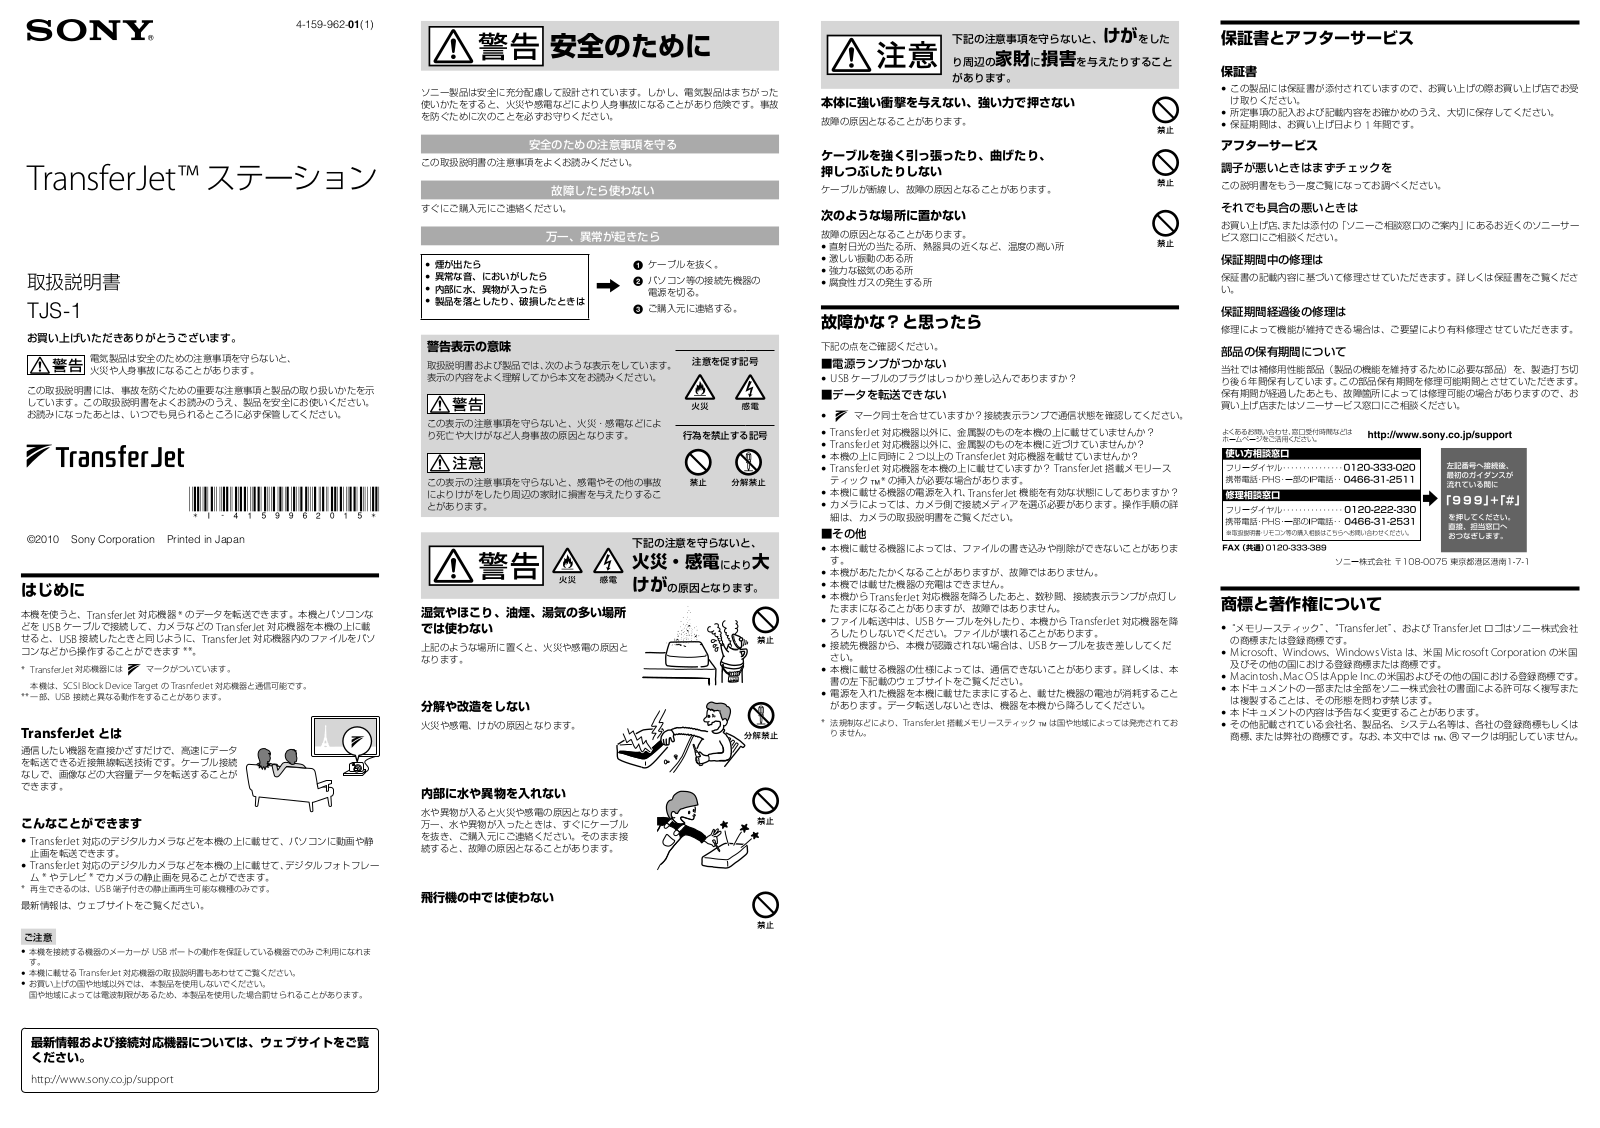 Sony TJS-1 User Manual